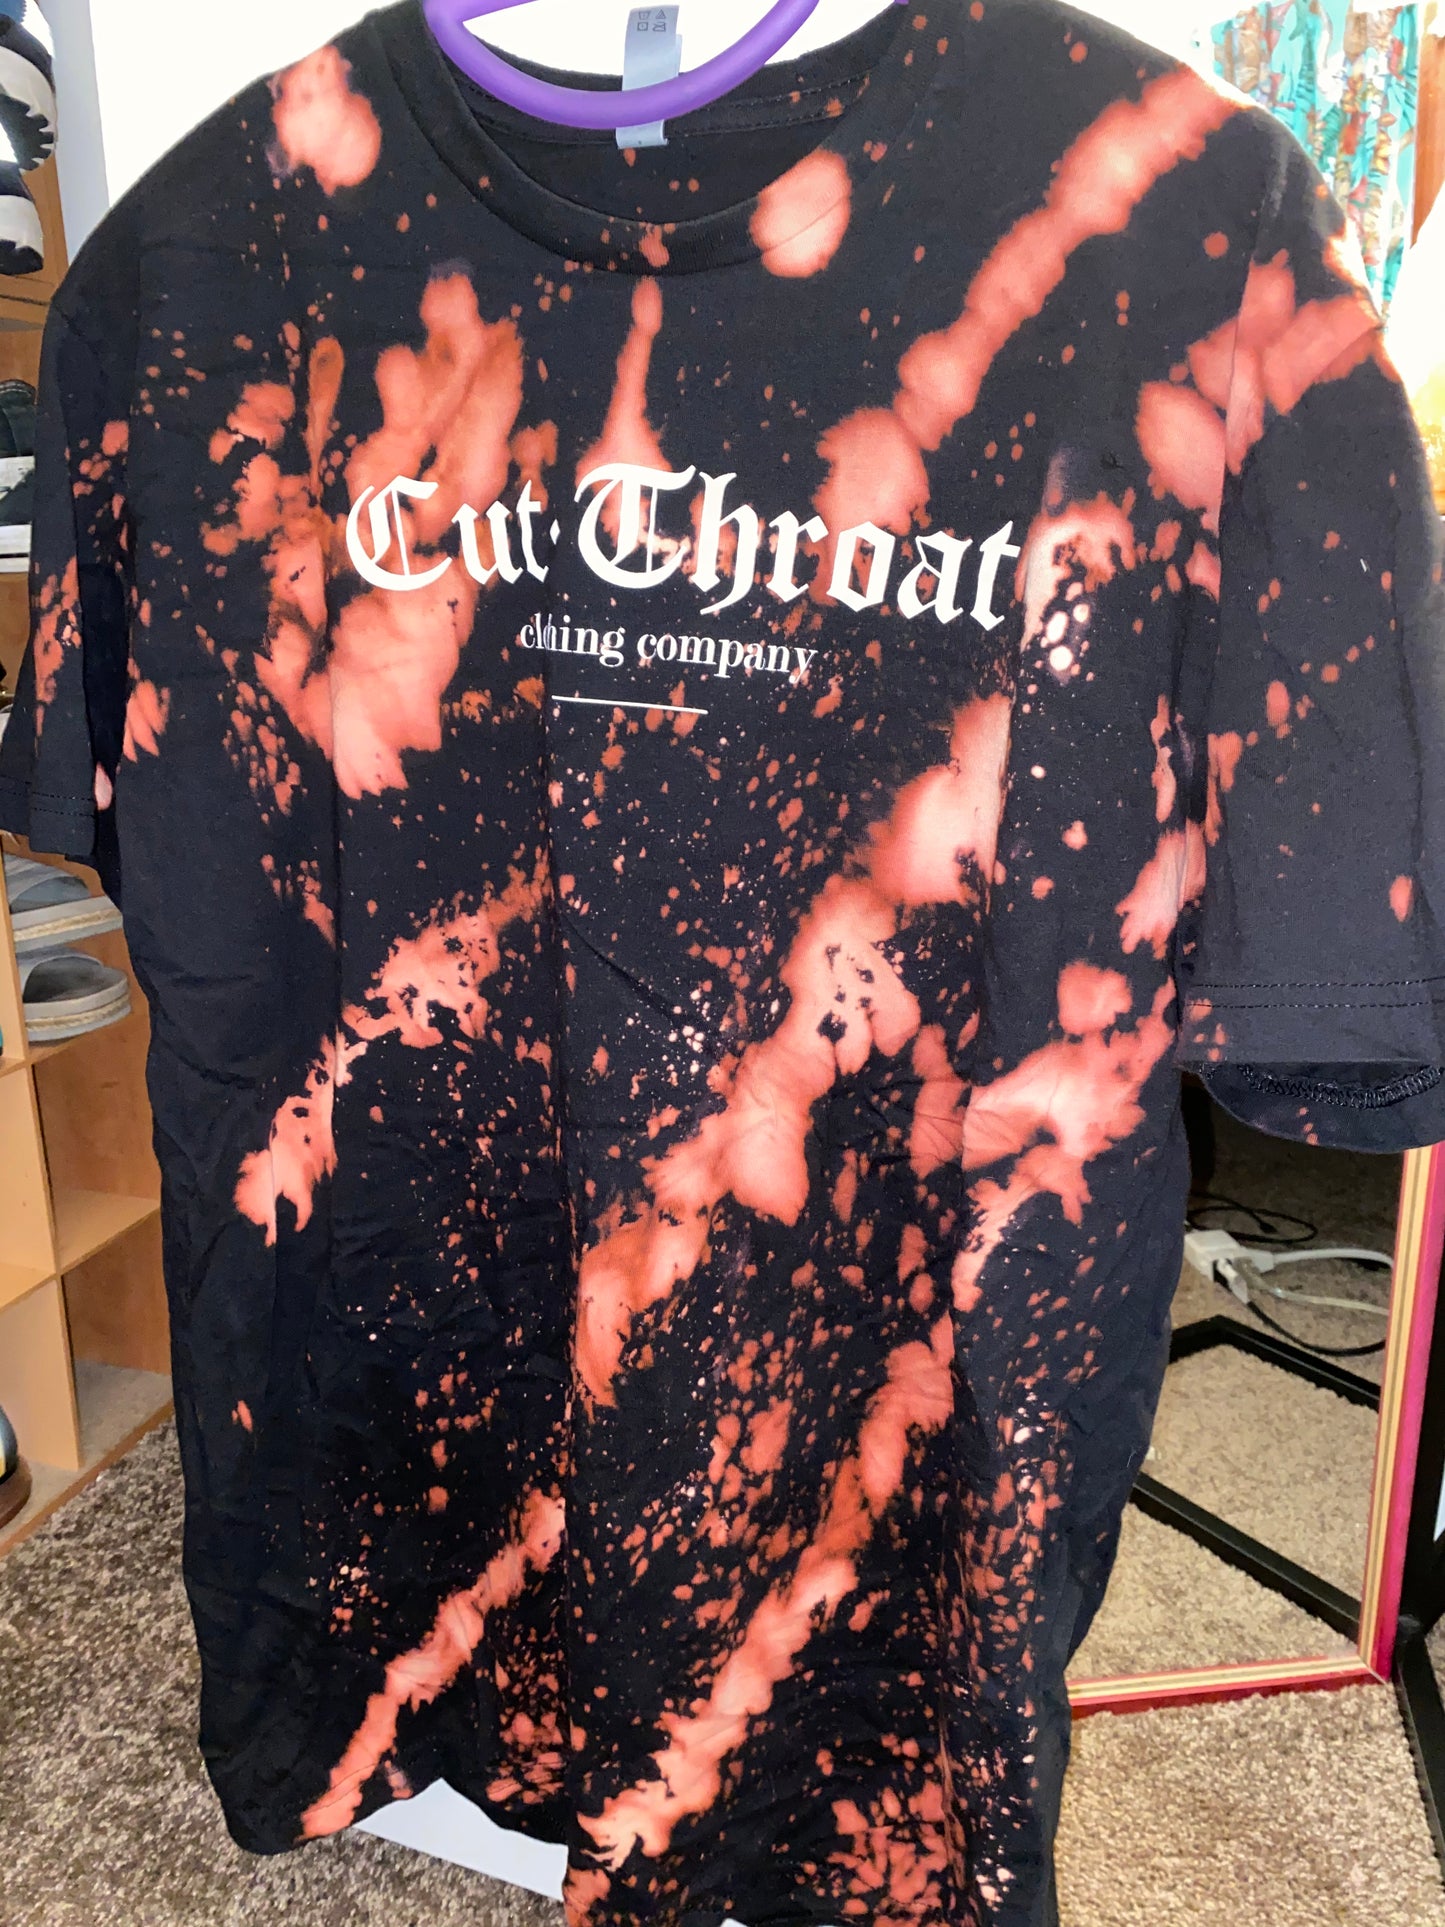 Cut-Throat Limited OG T-Shirt